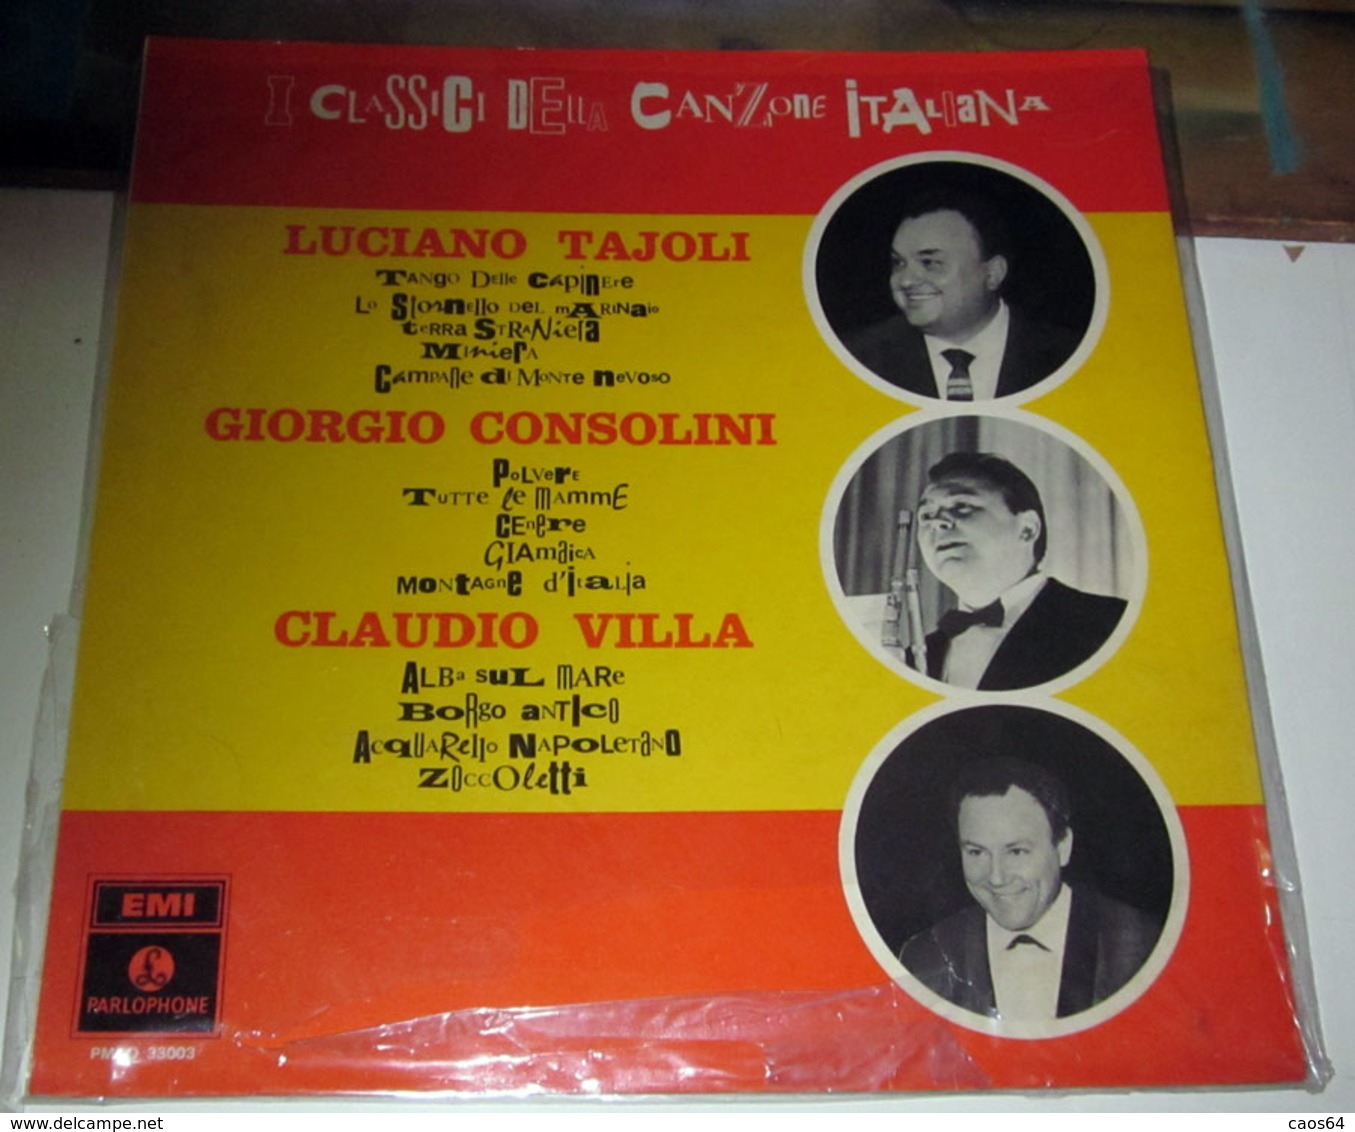 LUCIANO TAJOLI GIORGIO CONSOLINI CLAUDIO VILLA I CLASSICI DELLA CANZONE ITALIANA - Autres - Musique Italienne